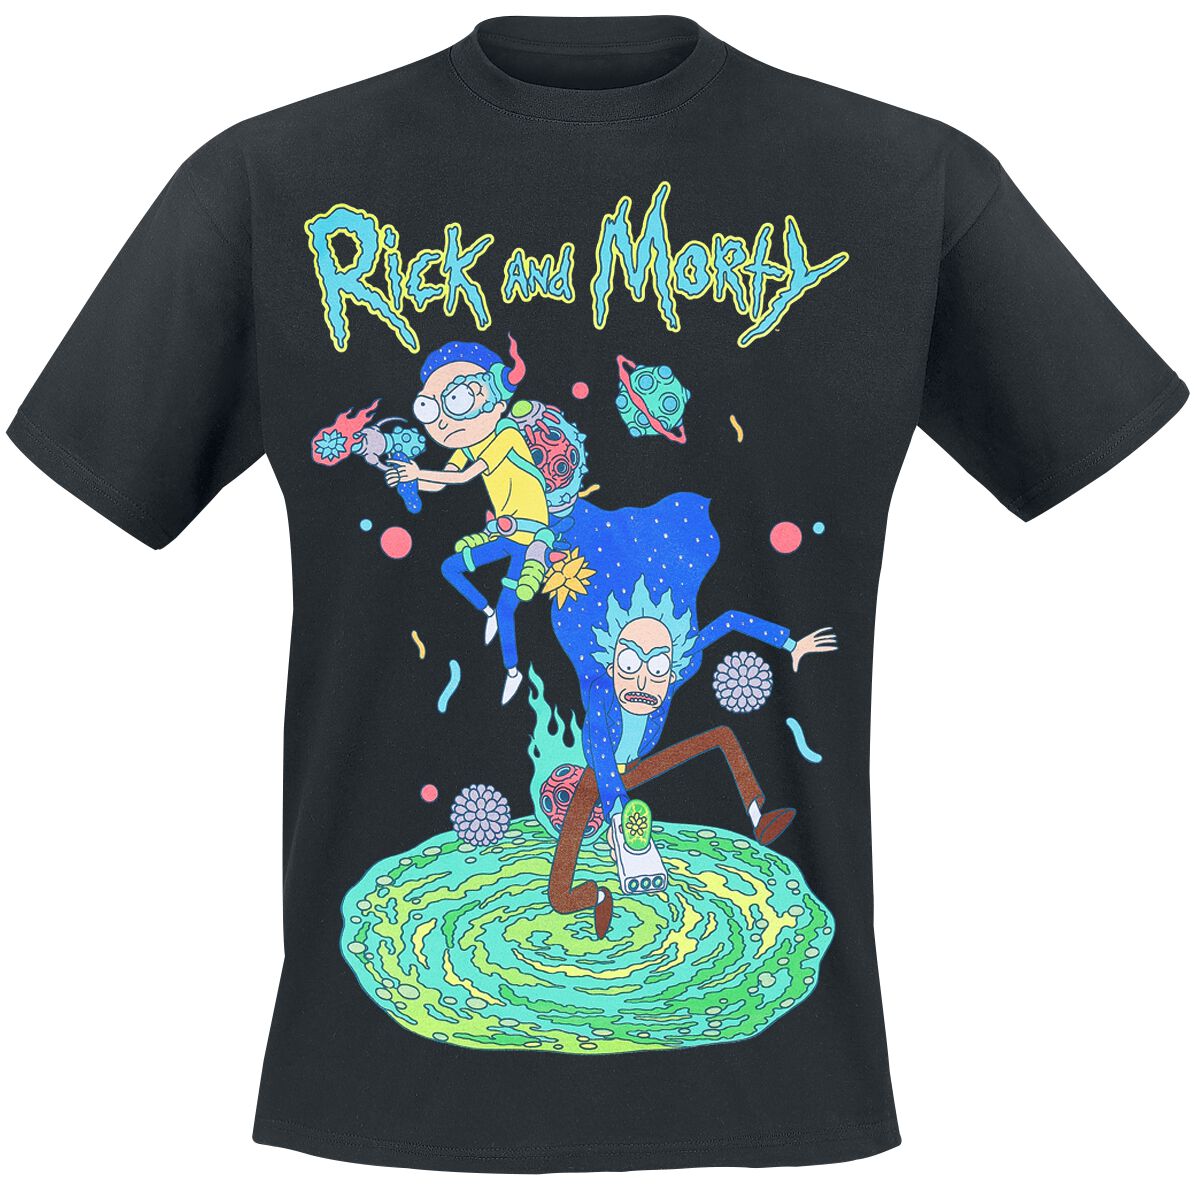 Rick And Morty T-Shirt - Space Rangers - S bis 4XL - für Männer - Größe XXL - schwarz  - EMP exklusives Merchandise!